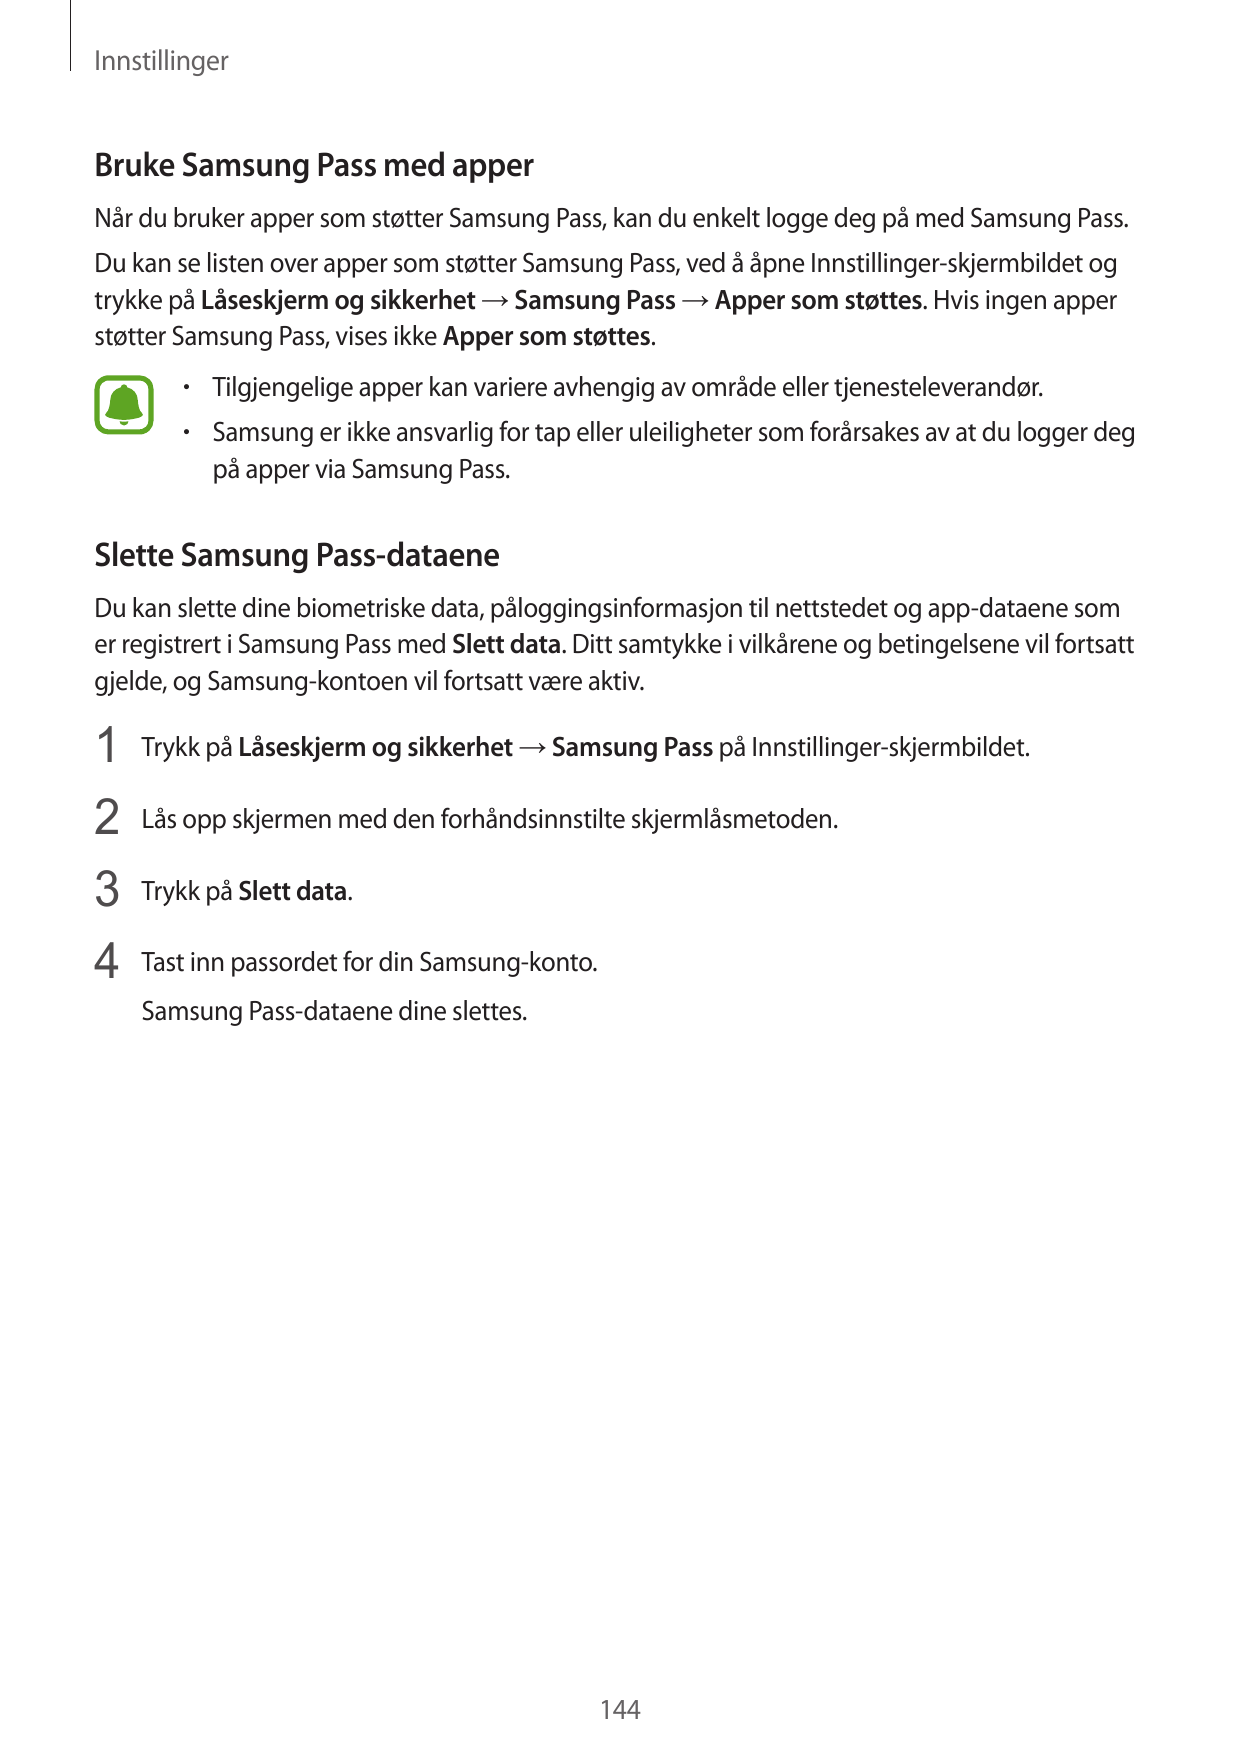 InnstillingerBruke Samsung Pass med apperNår du bruker apper som støtter Samsung Pass, kan du enkelt logge deg på med Samsung Pa